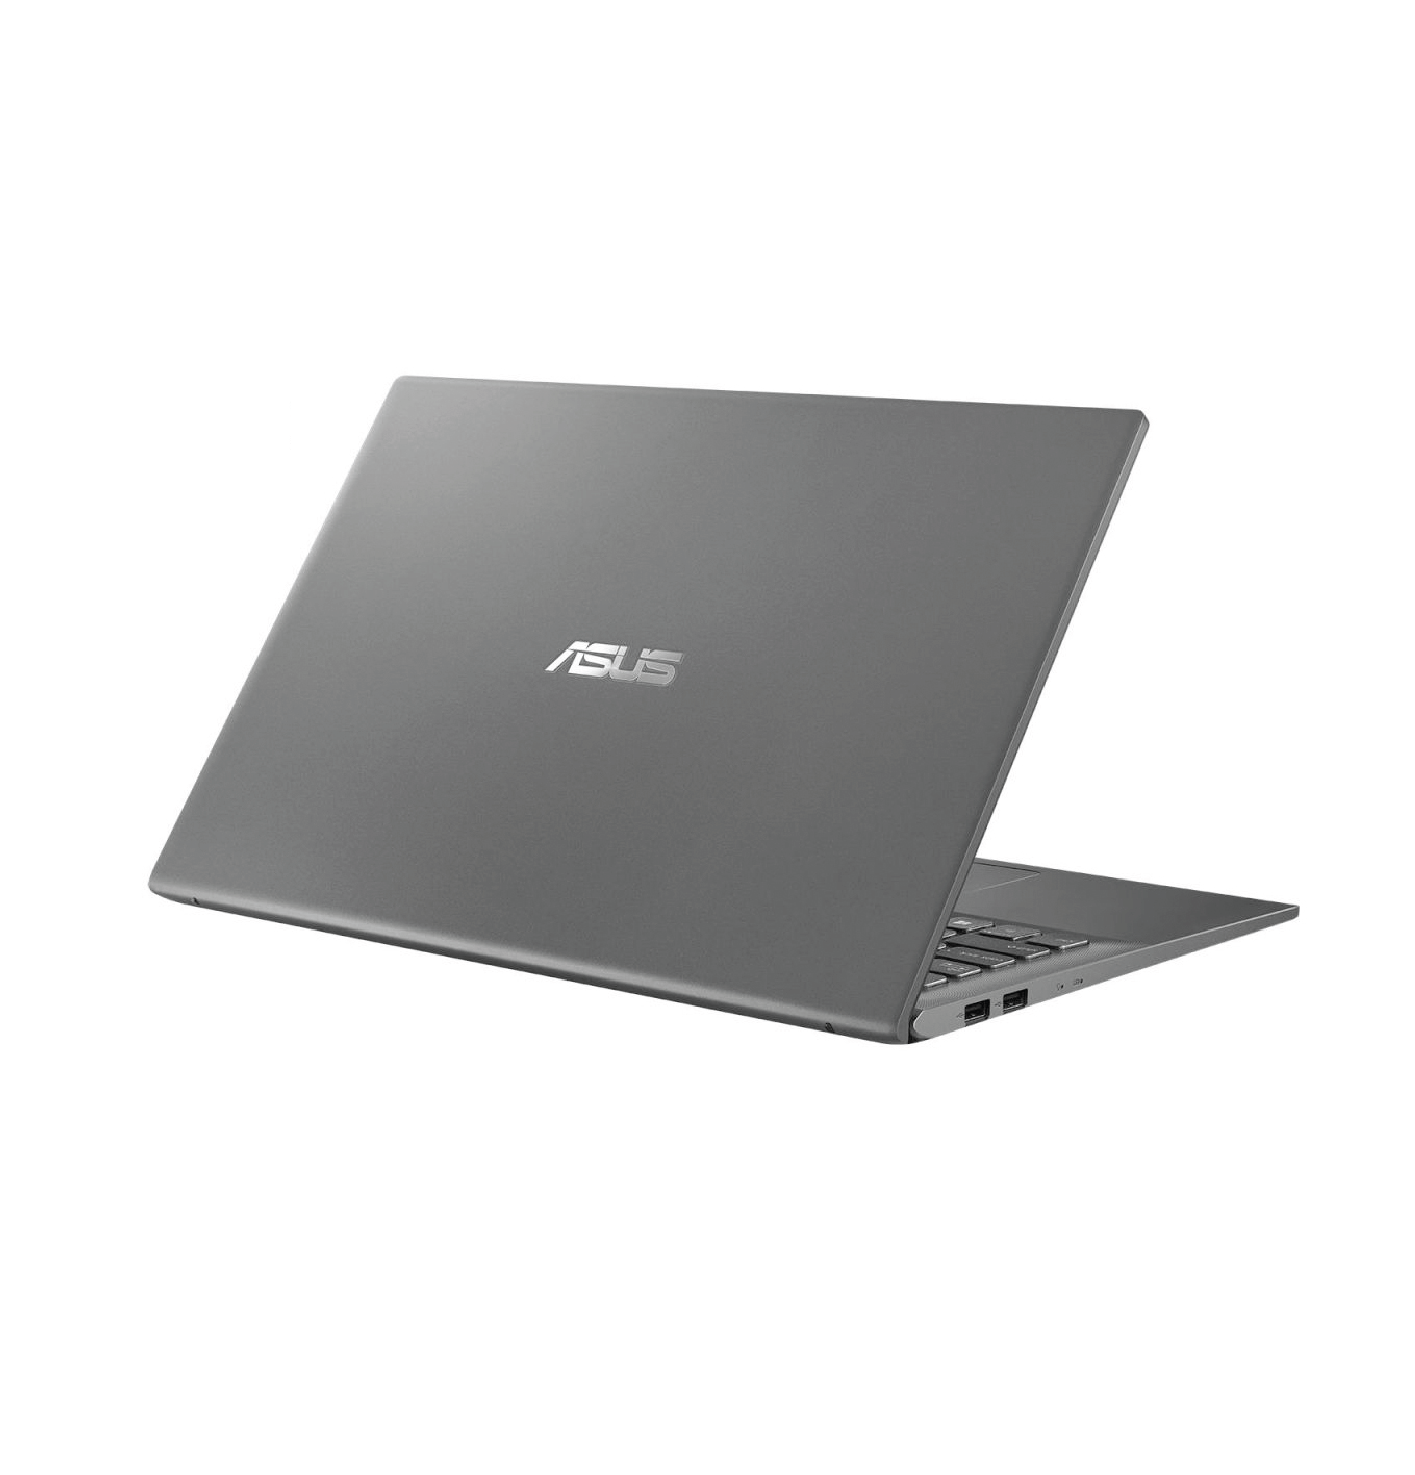 لپ تاپ ایسوس 15اینچ Asus VivoBook 15 R564JP : Core i7-1065G7 / 8GB RAM / 1TB HDD +256GB SSD / 2GB MX330 thumb 451